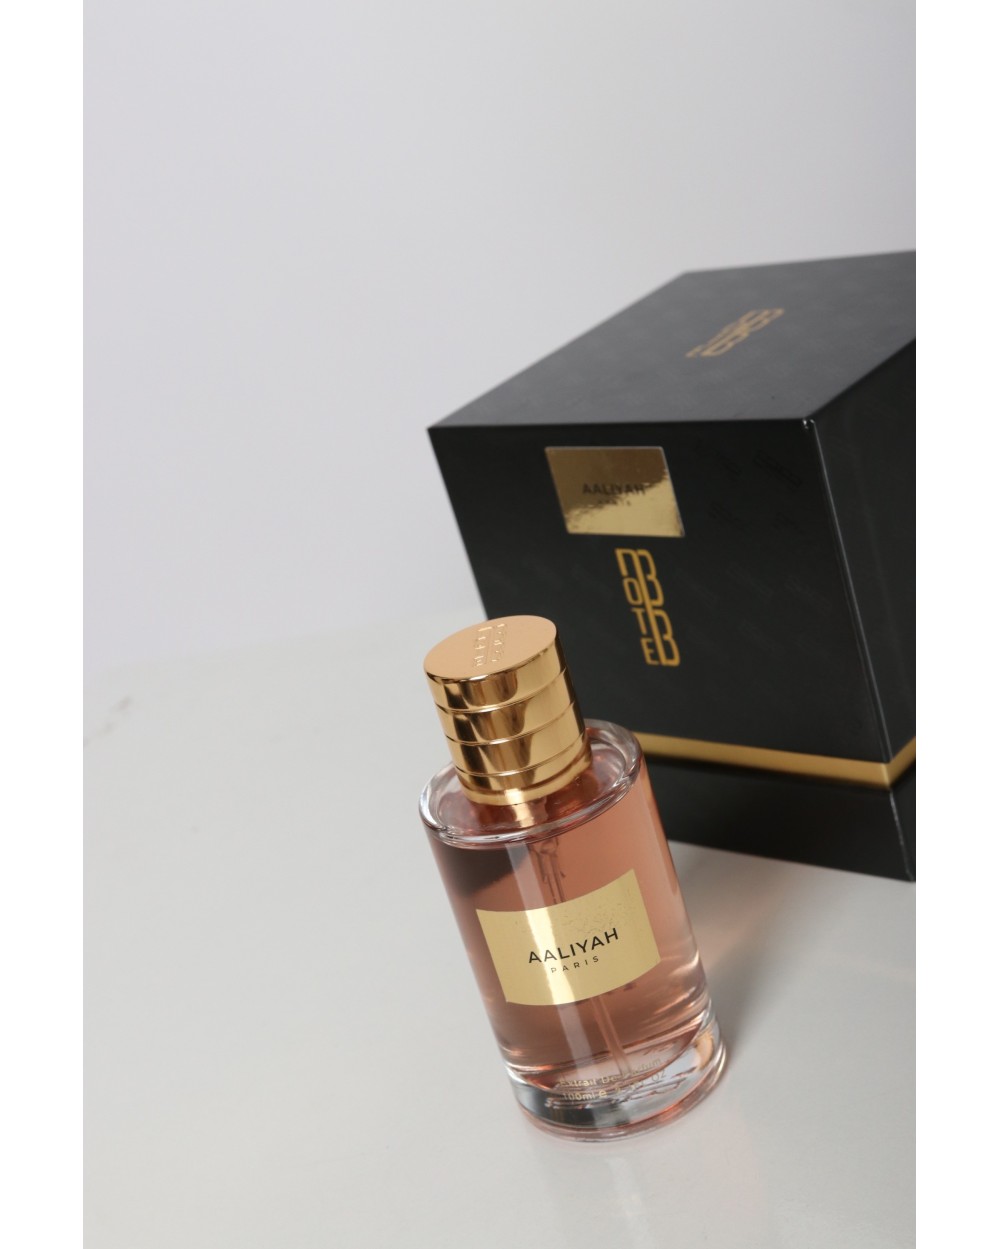 Aaliyah Perfume 100ml